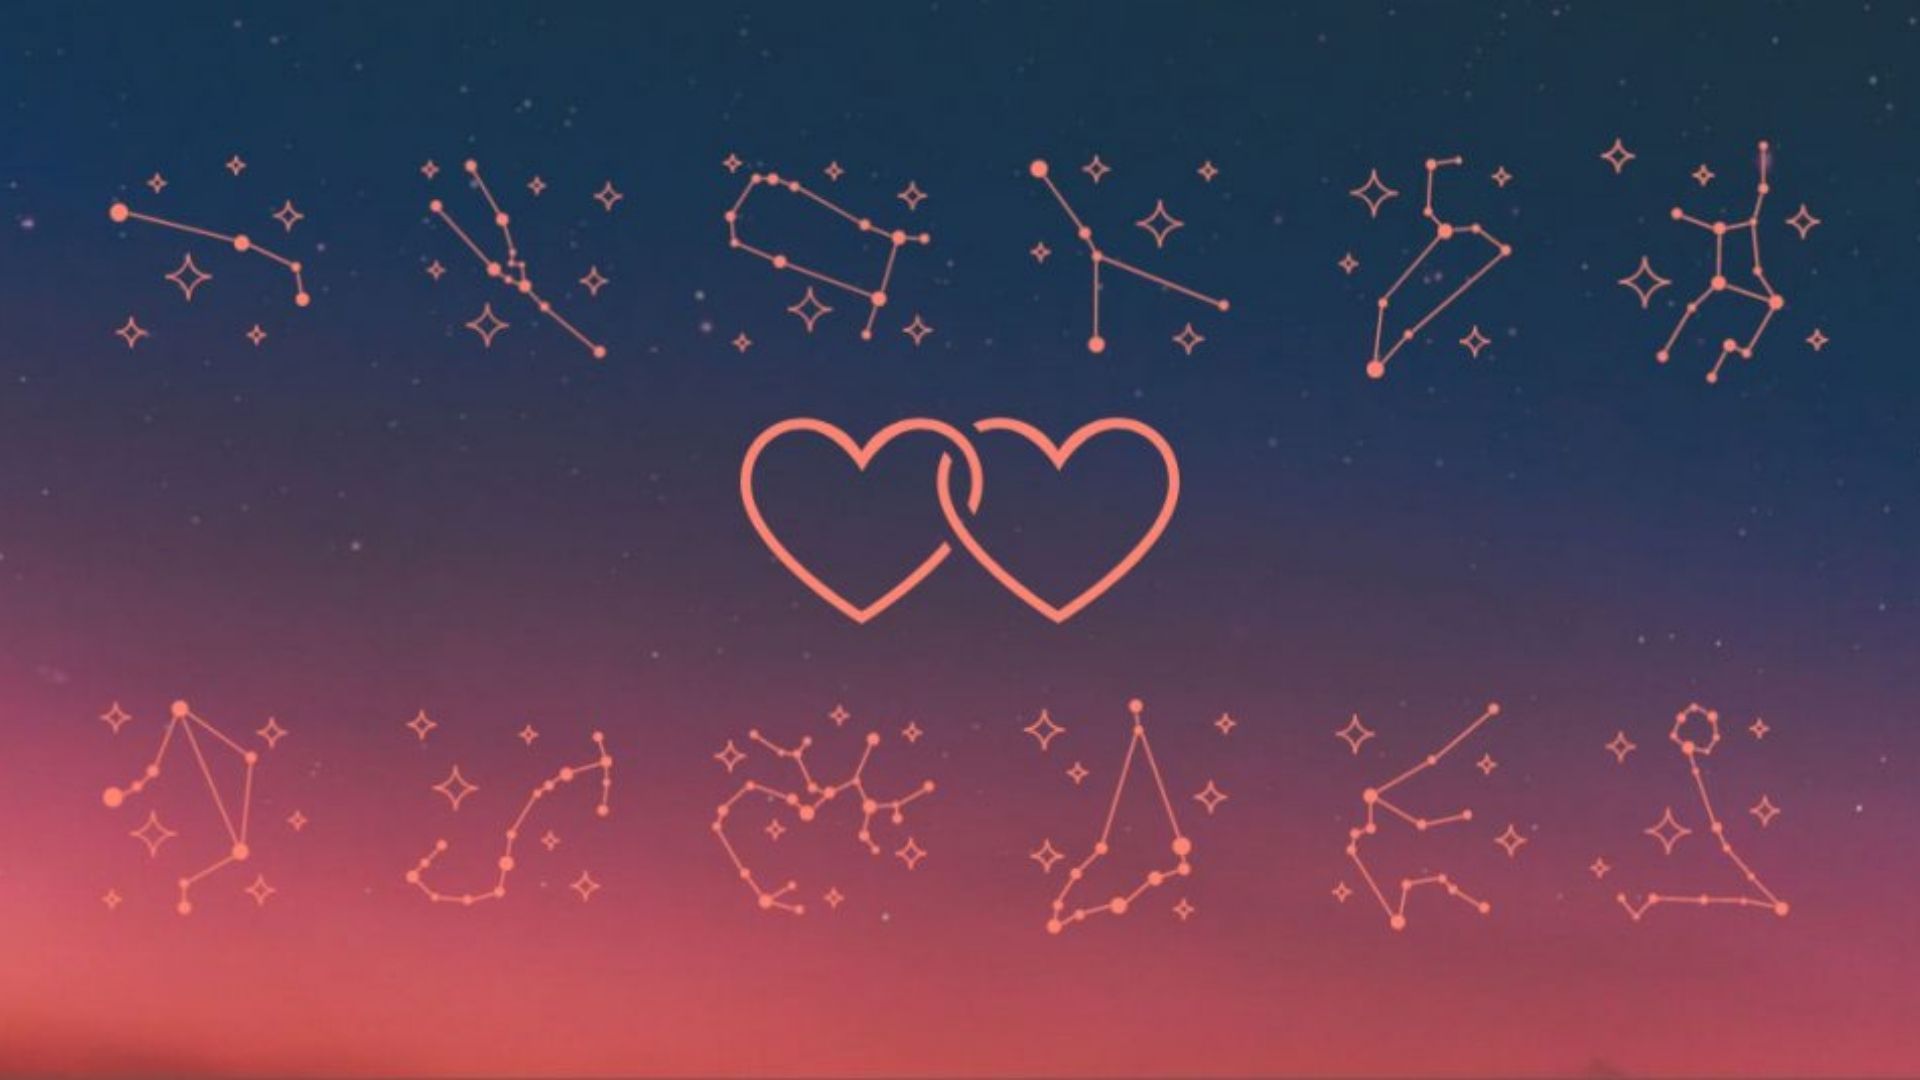 Símbolos da astrologia com um par de coração representando o amor